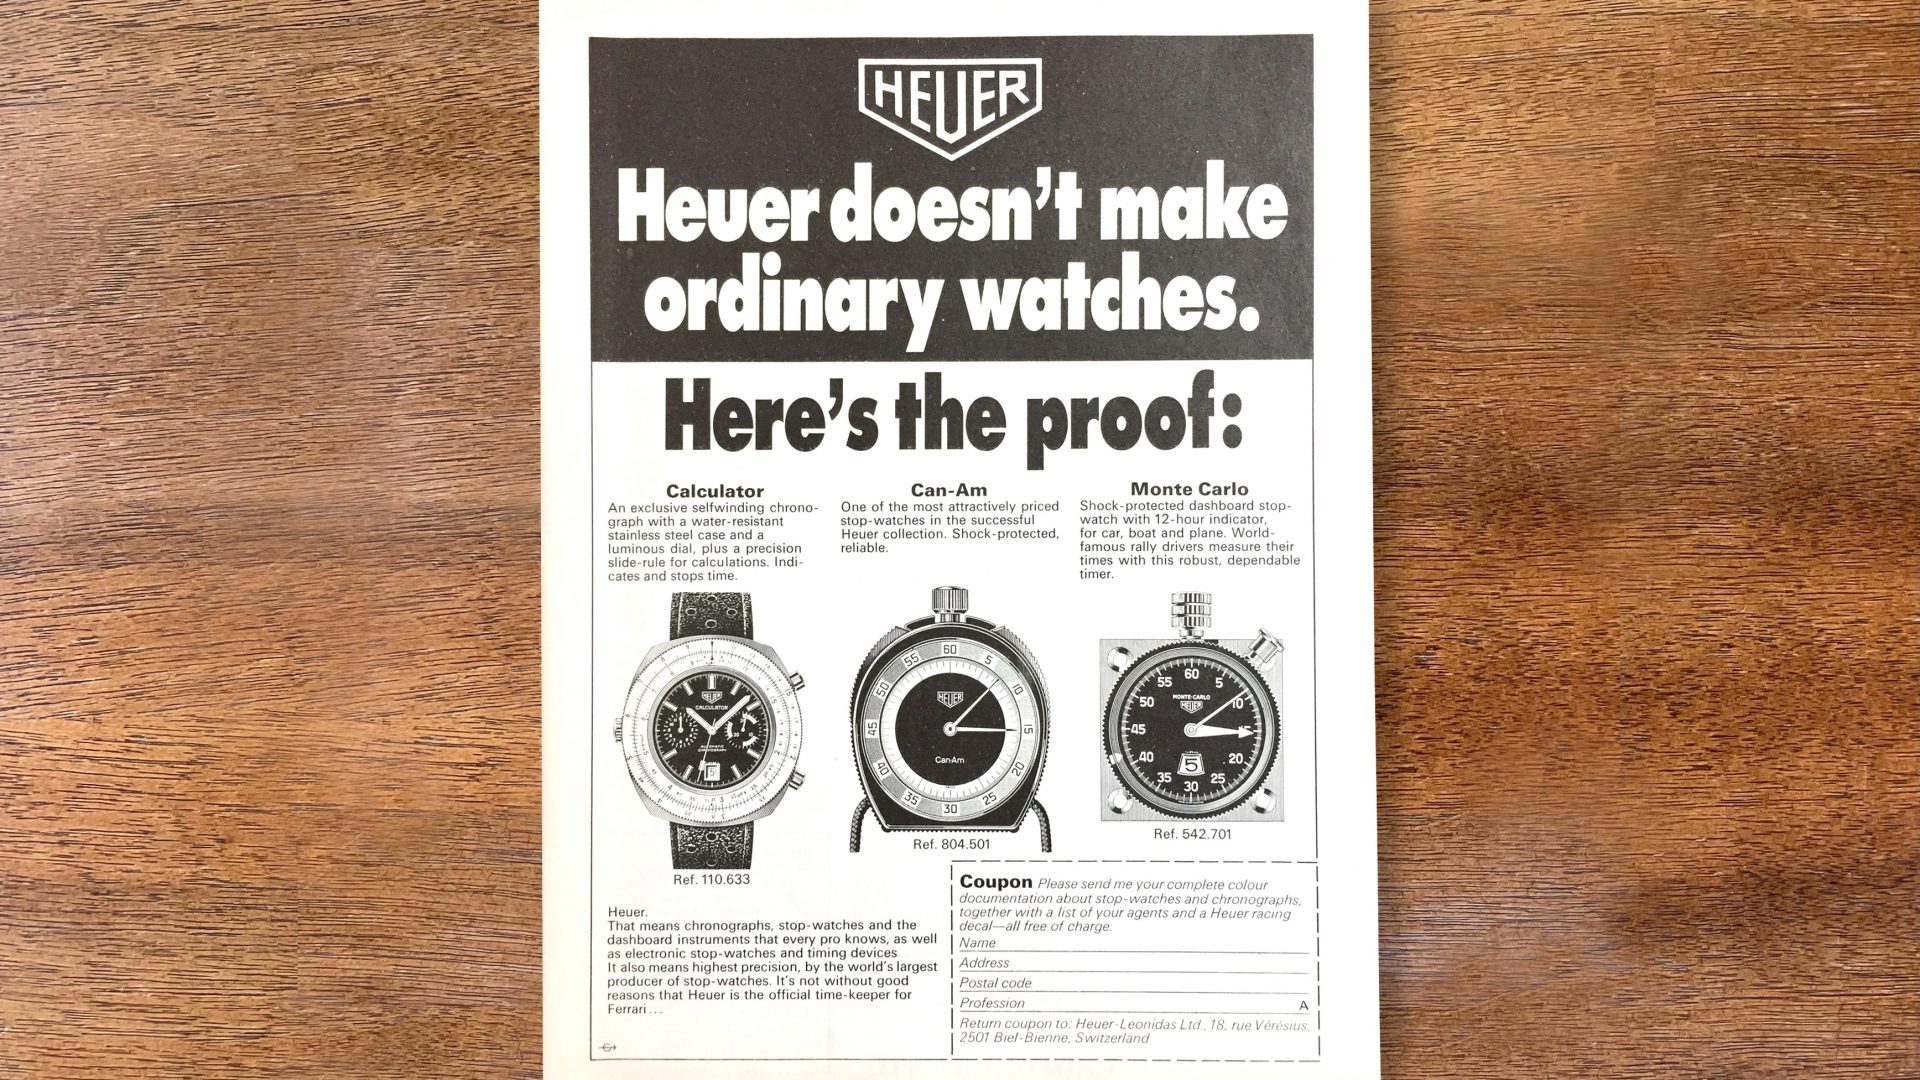 オールドタイマーズ：ホイヤーを魅了した70年代のヴィンテージ広告